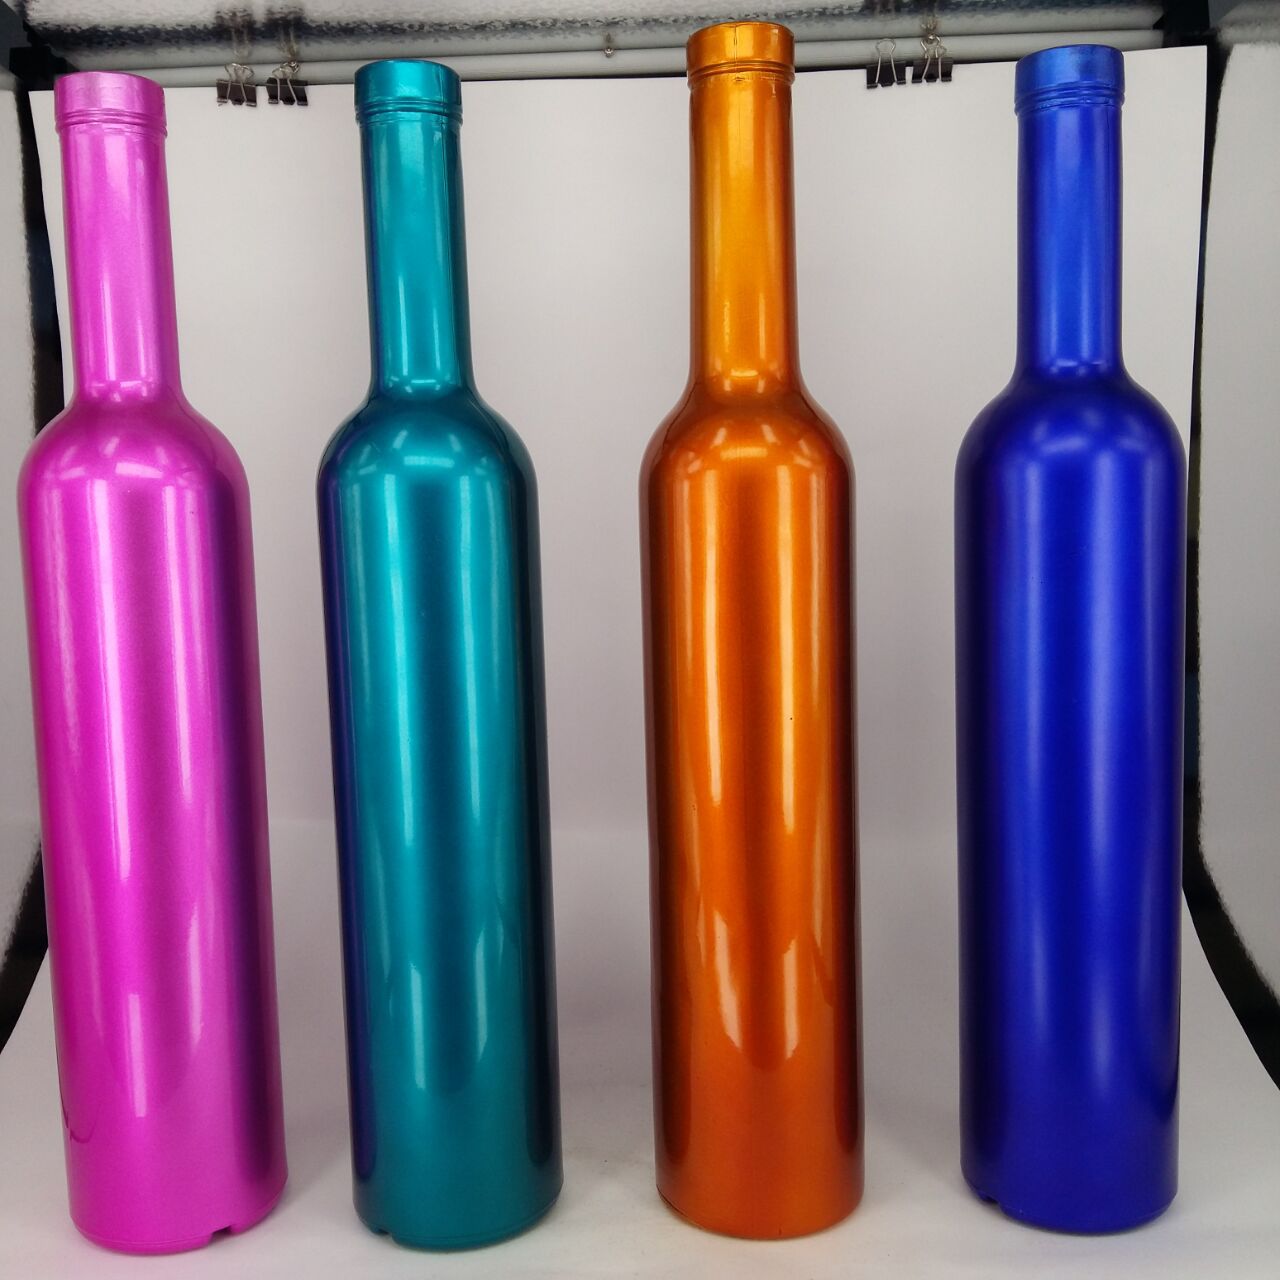 厂家生产 各种玻璃酒瓶 喷色玻璃 白酒瓶 500ml 洋酒瓶 价格优惠